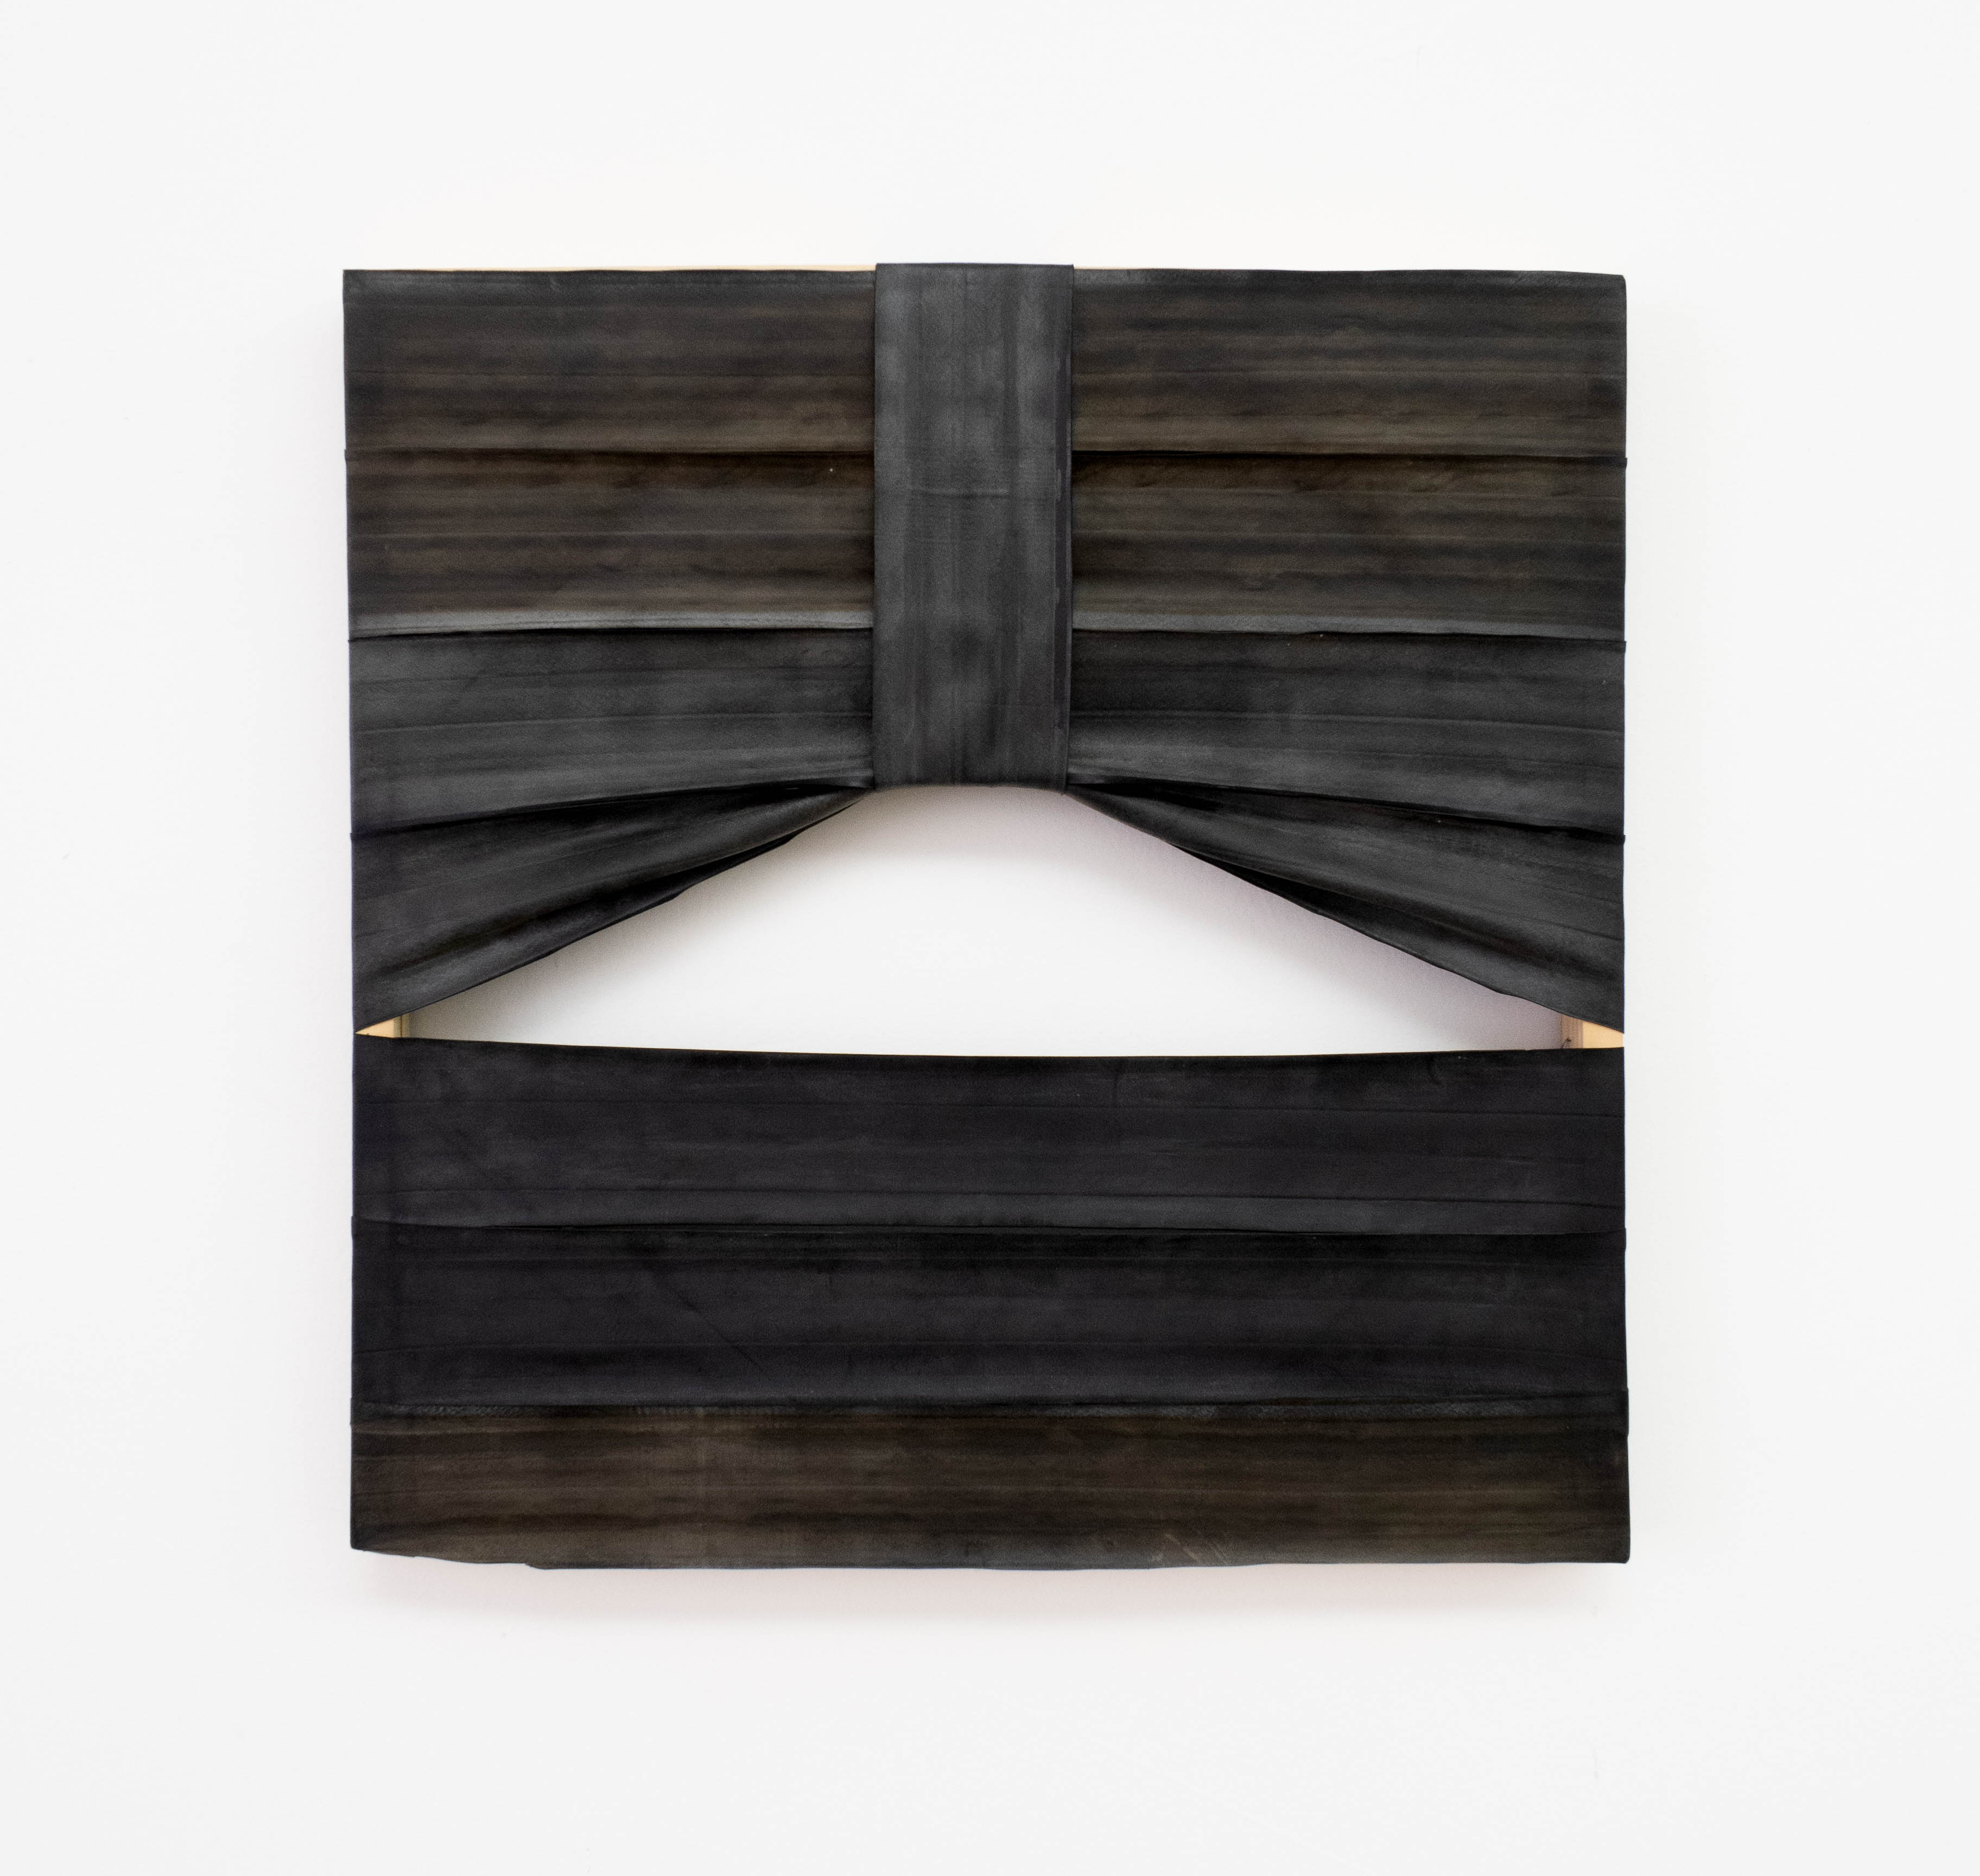 Fernando Soares, Série Força 1, Borracha sobre chassi de madeira, 60 x 60 cm, 2019